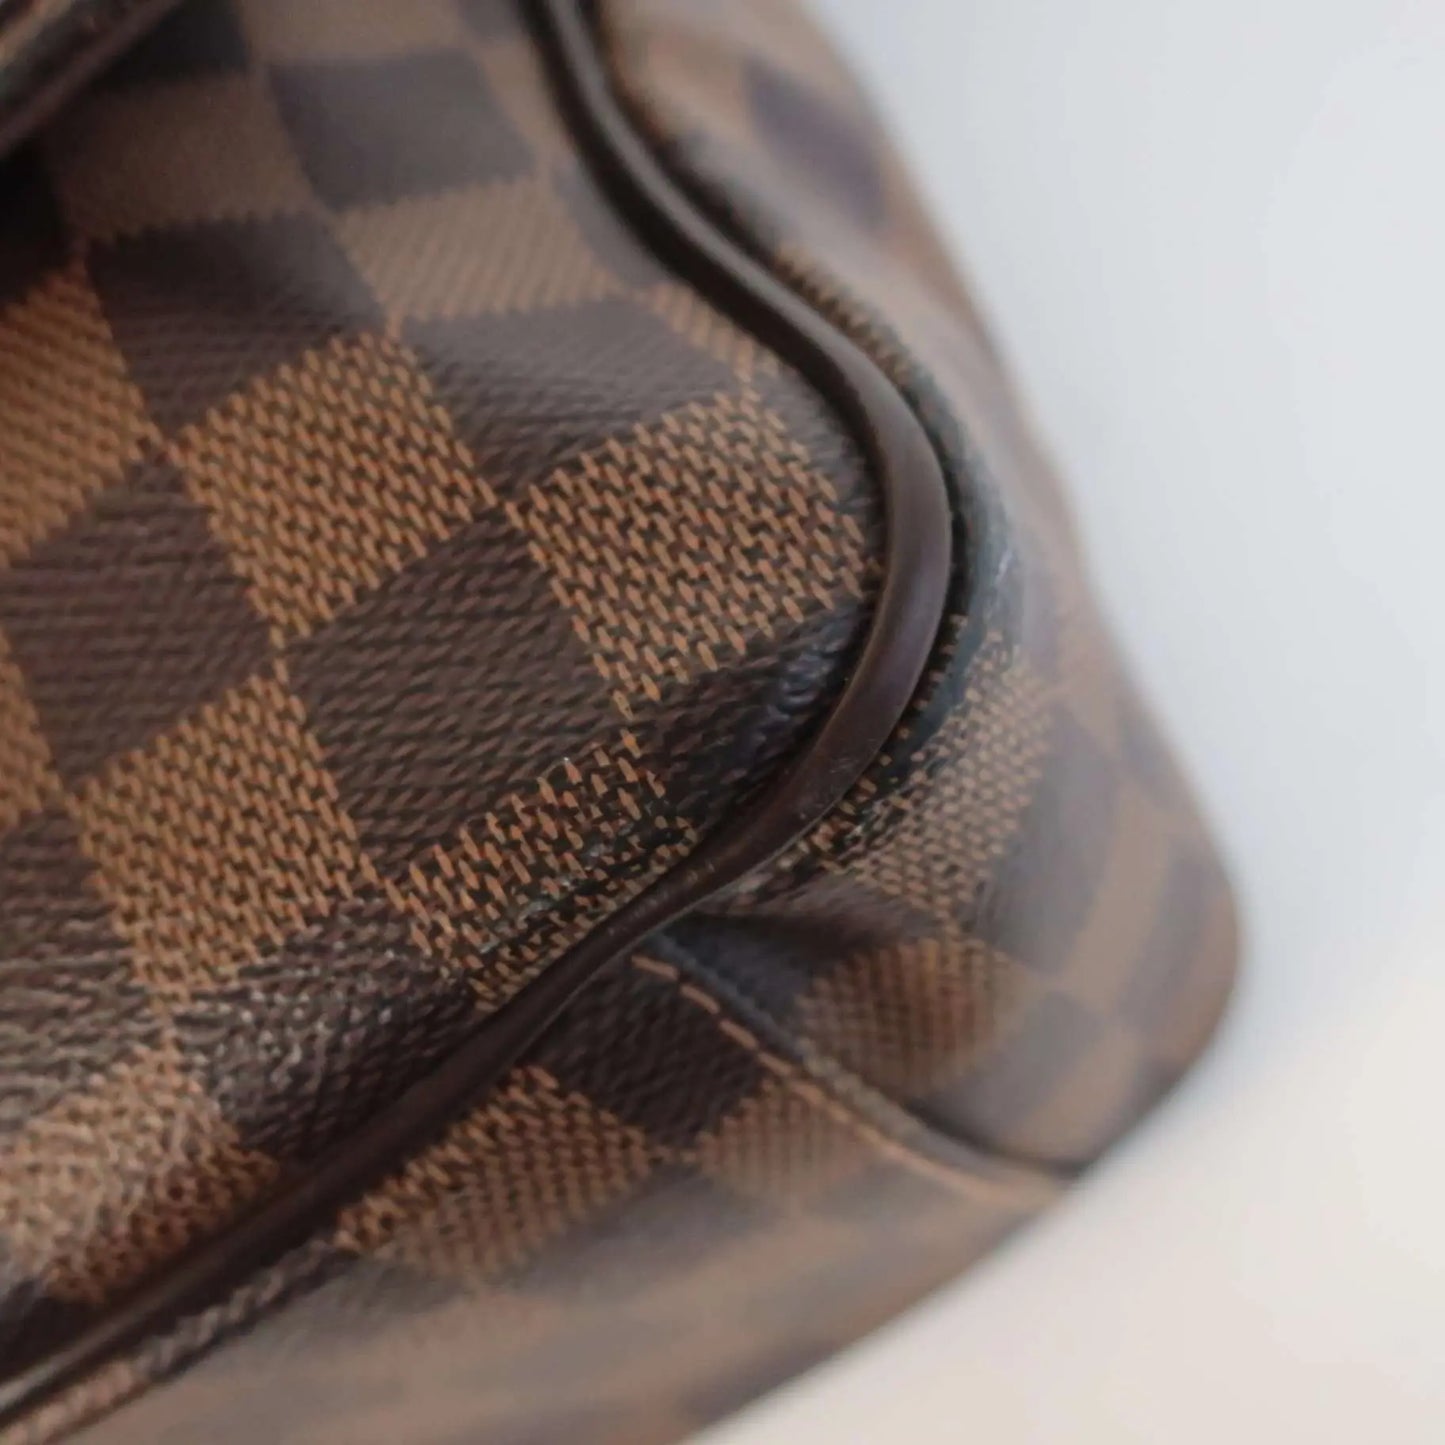 Authentic Louis Vuitton LV Hand Bag Shelton Beige Monogram Matt w LV Dust  bag